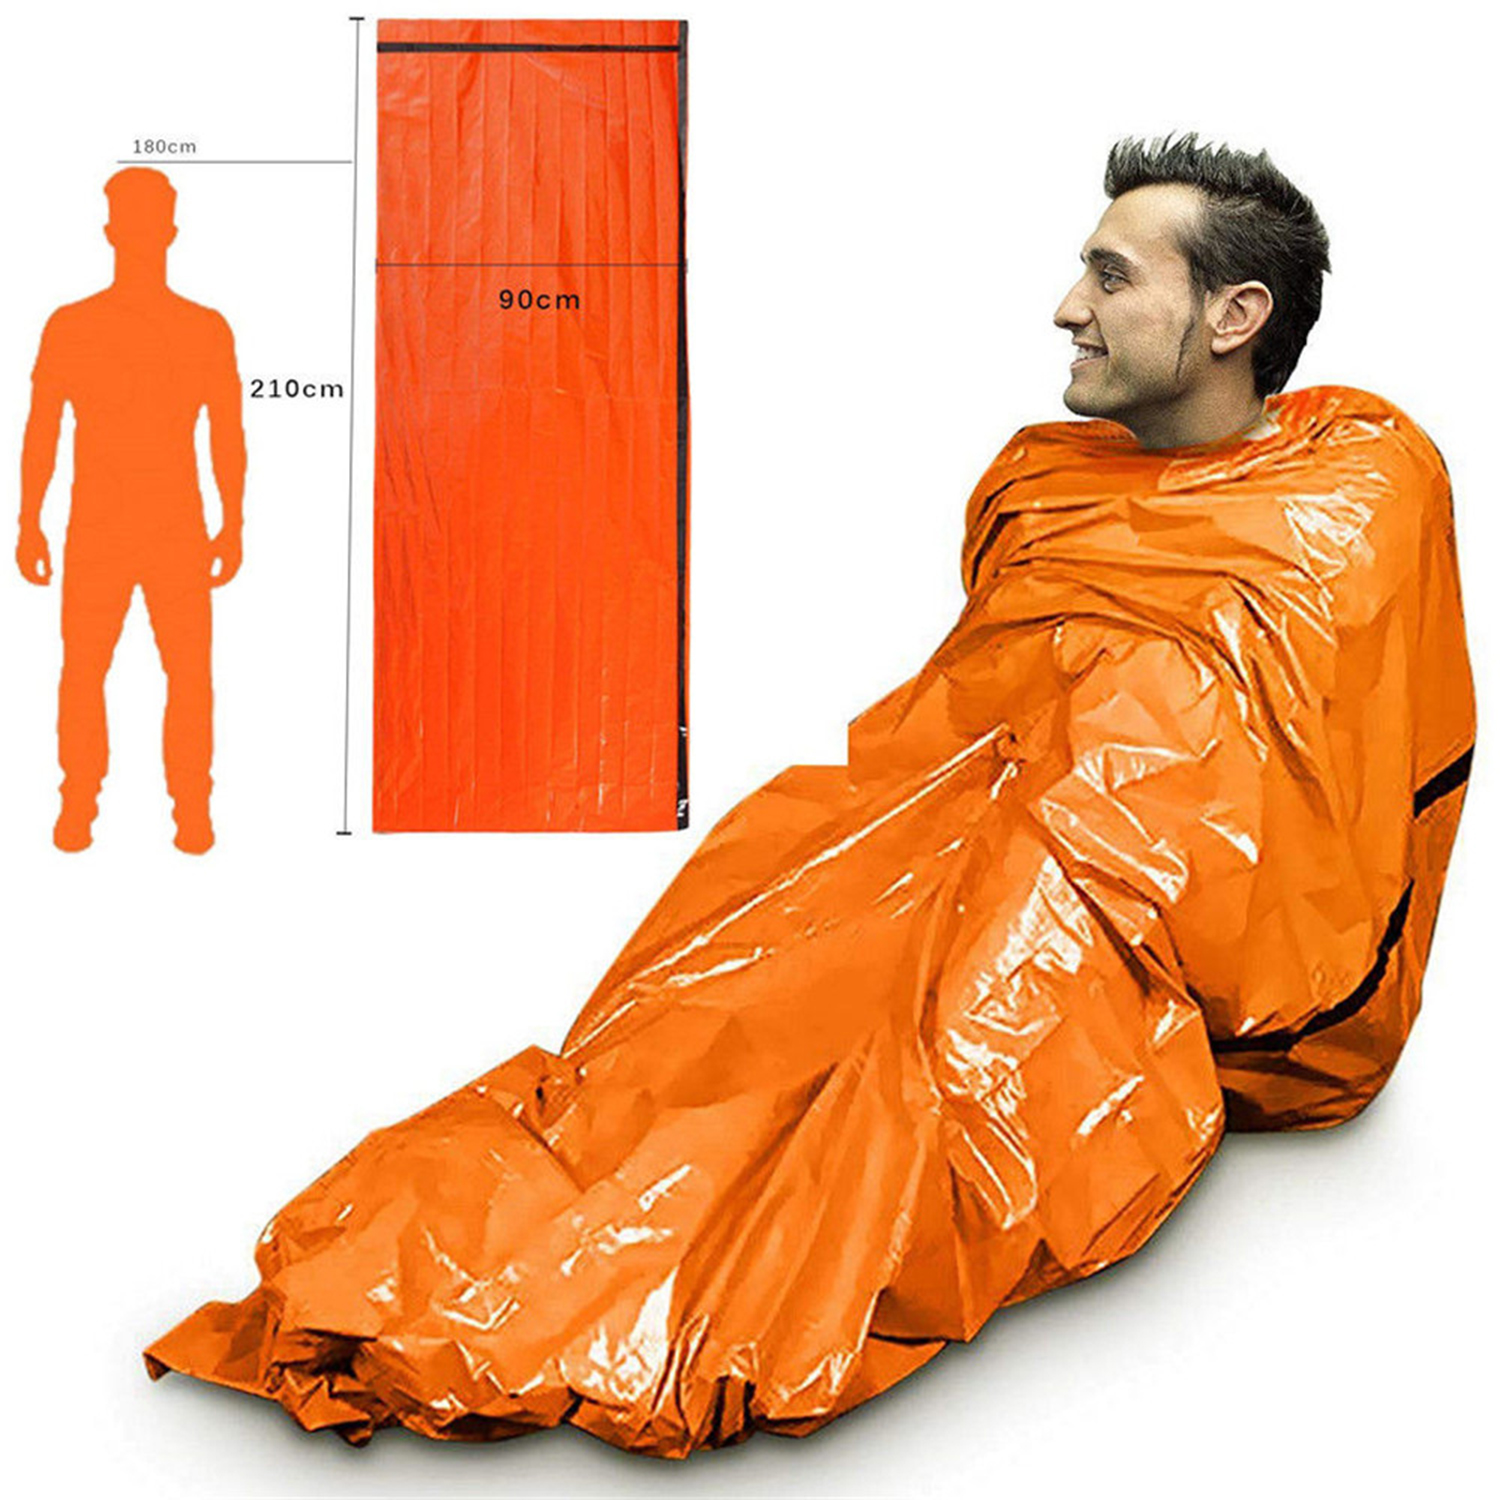 Reusable Sleeping Bag Camouflage Waterproof Emergency Sleeping Bag First Aid Sleeping Bag Thermal Survival Camping Sleeping Bag